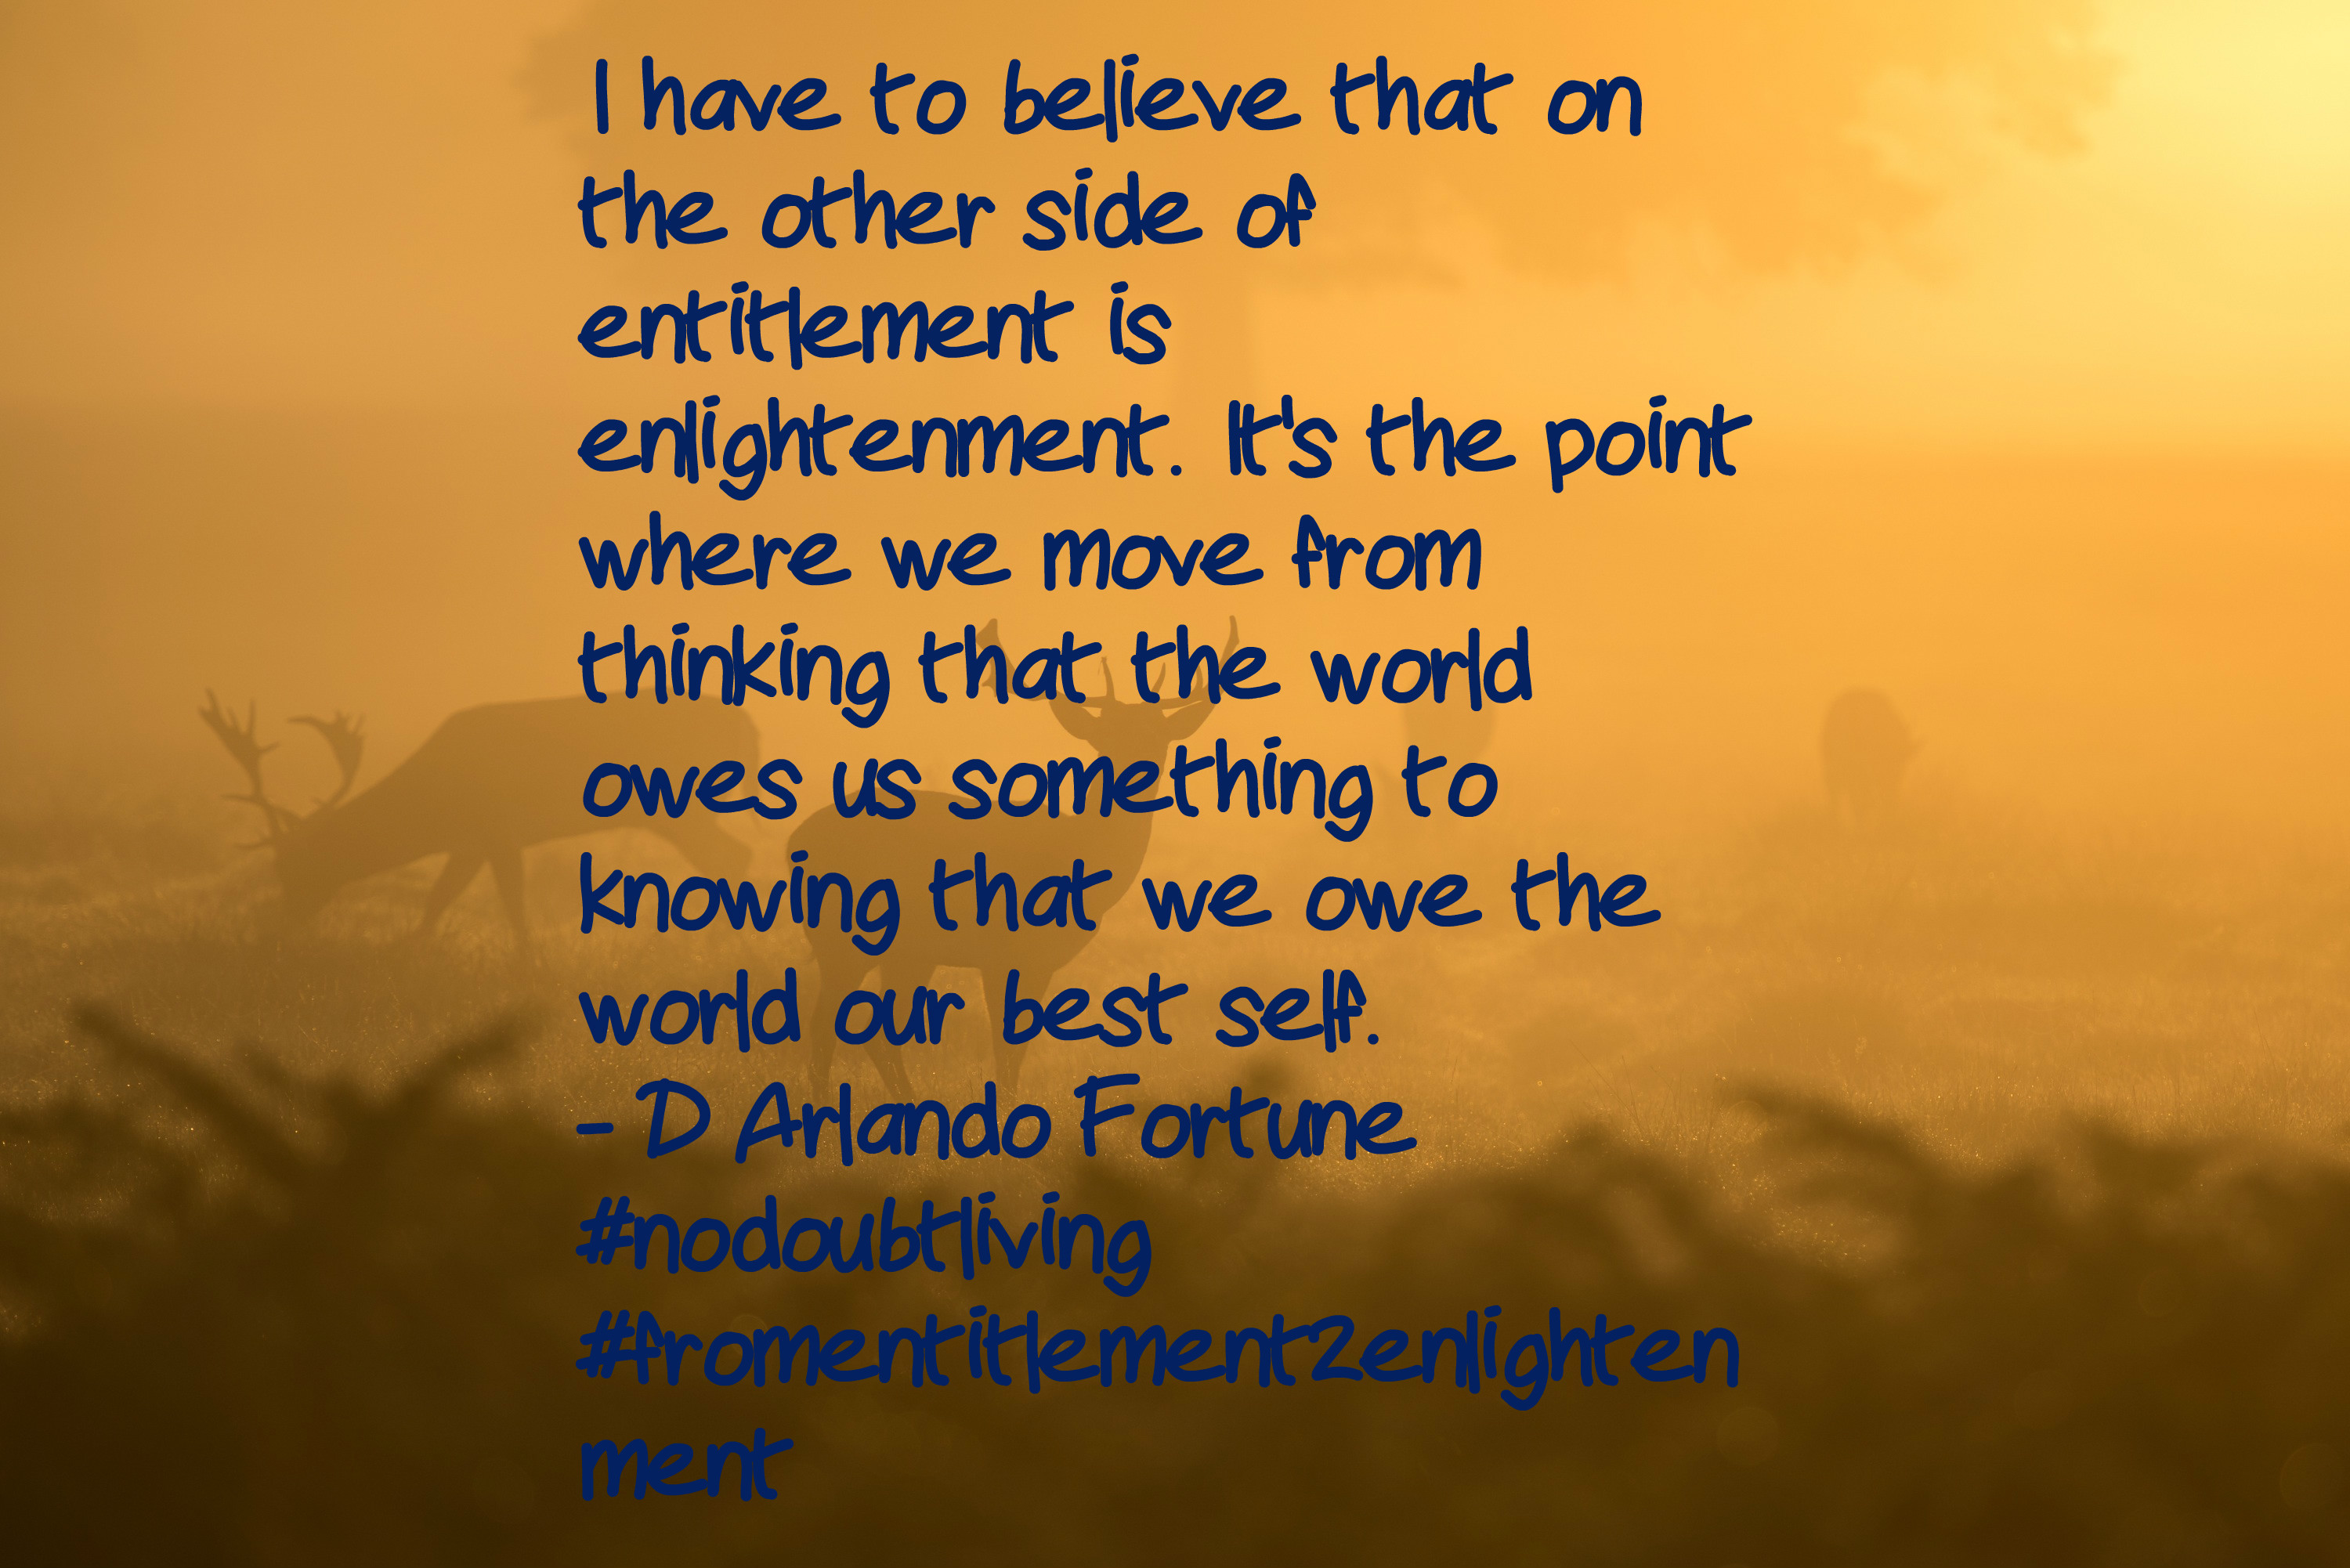 entitlement 2 enlightenment - DONE